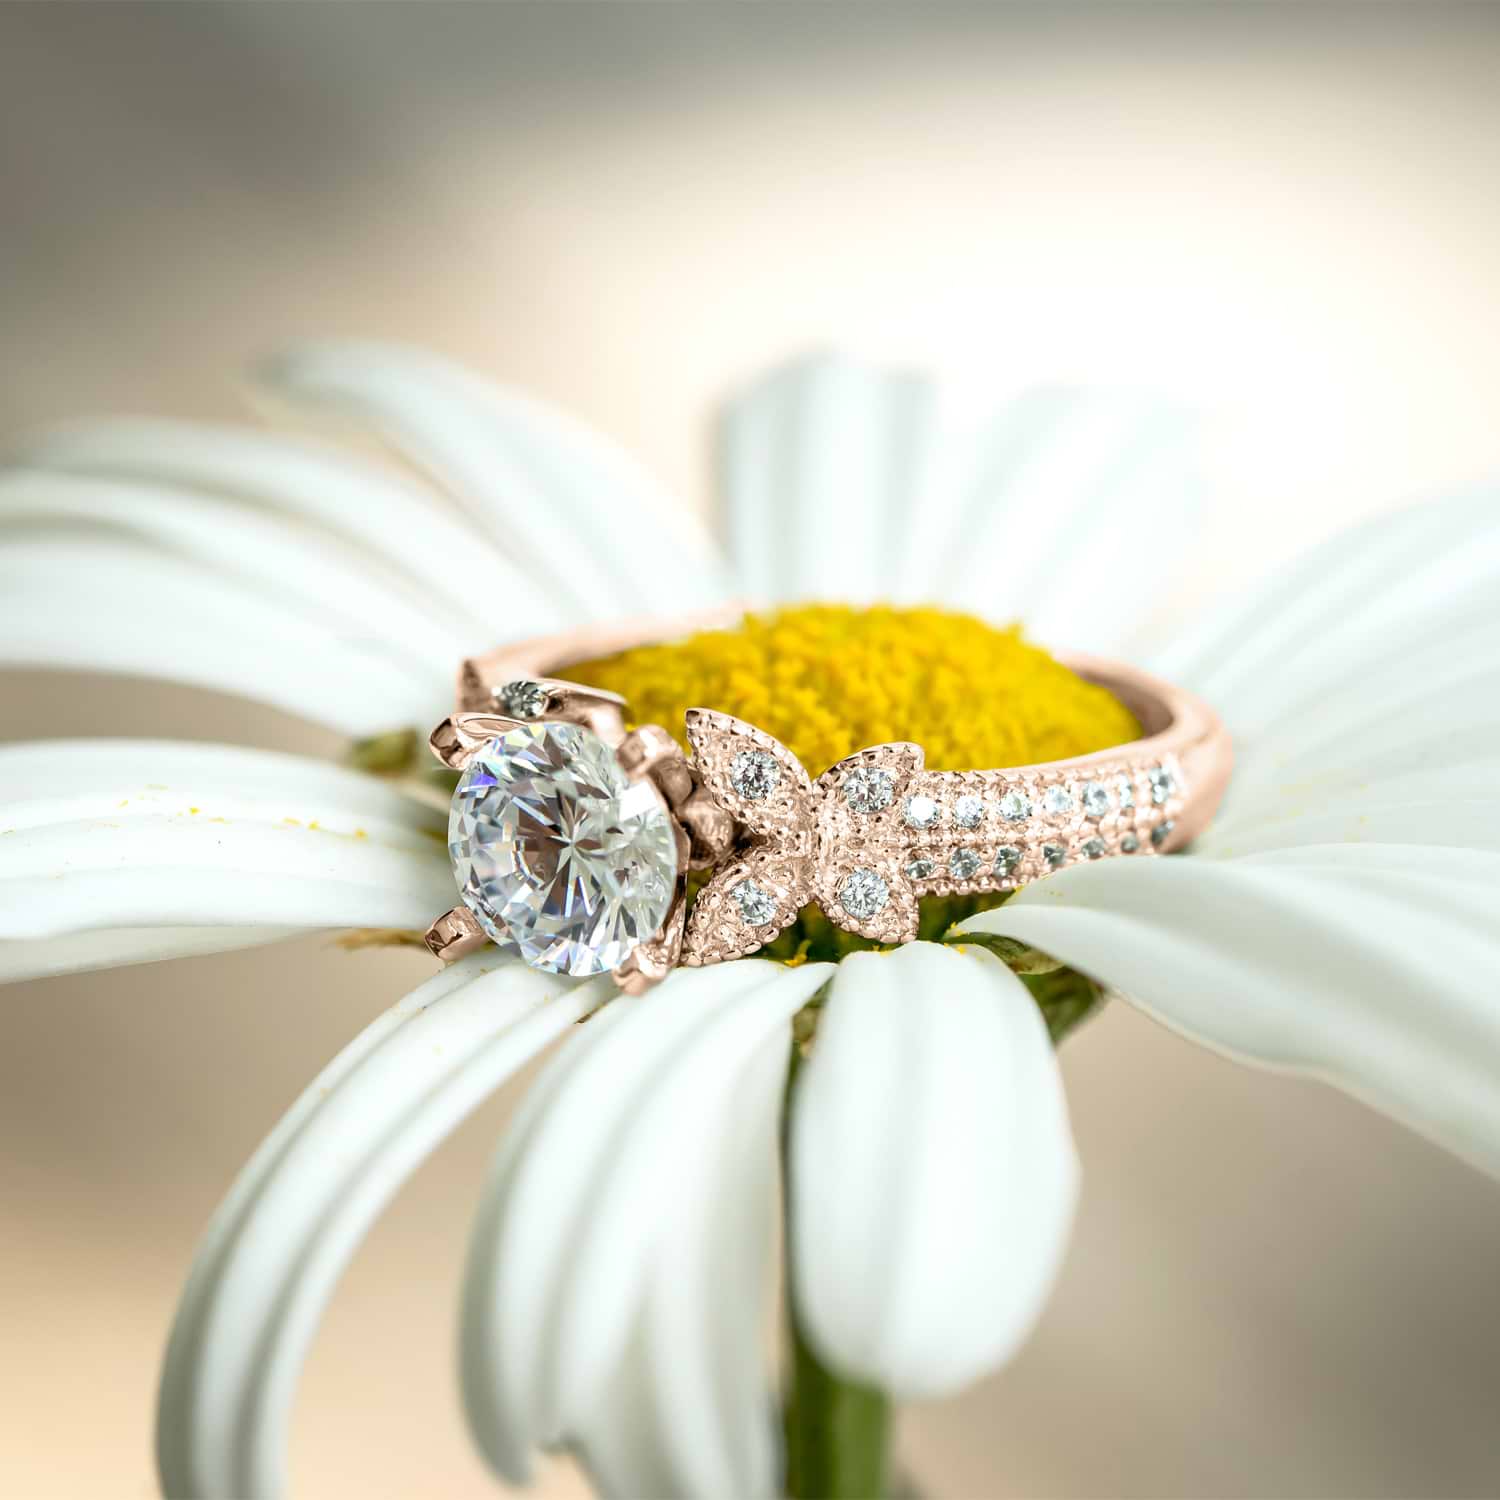 Butterfly Milgrain Diamond Engagement Ring 14K Rose Gold (0.25ct)